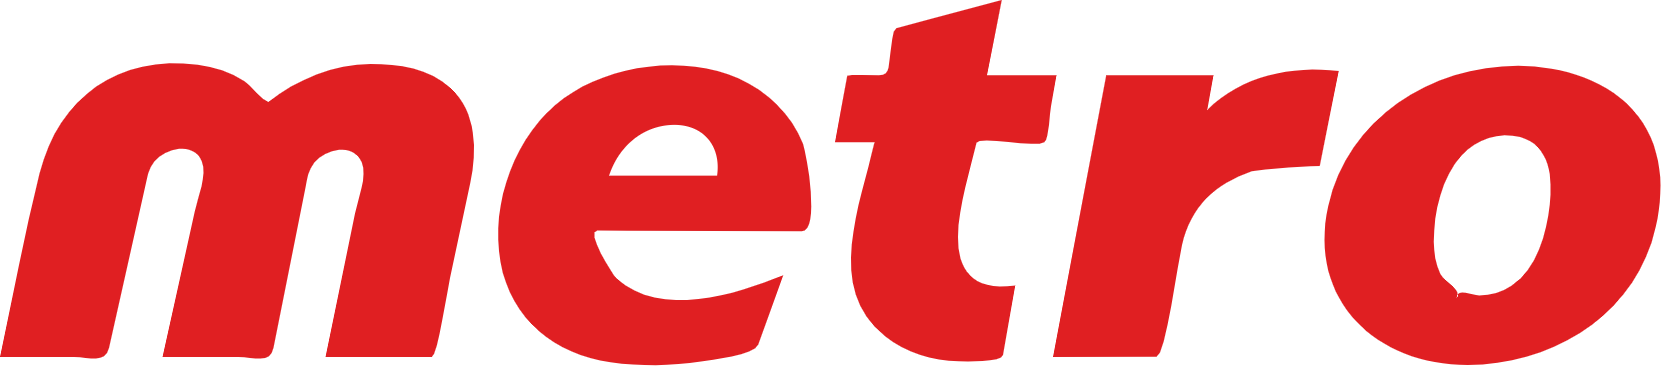 Metro logo large (transparent PNG)